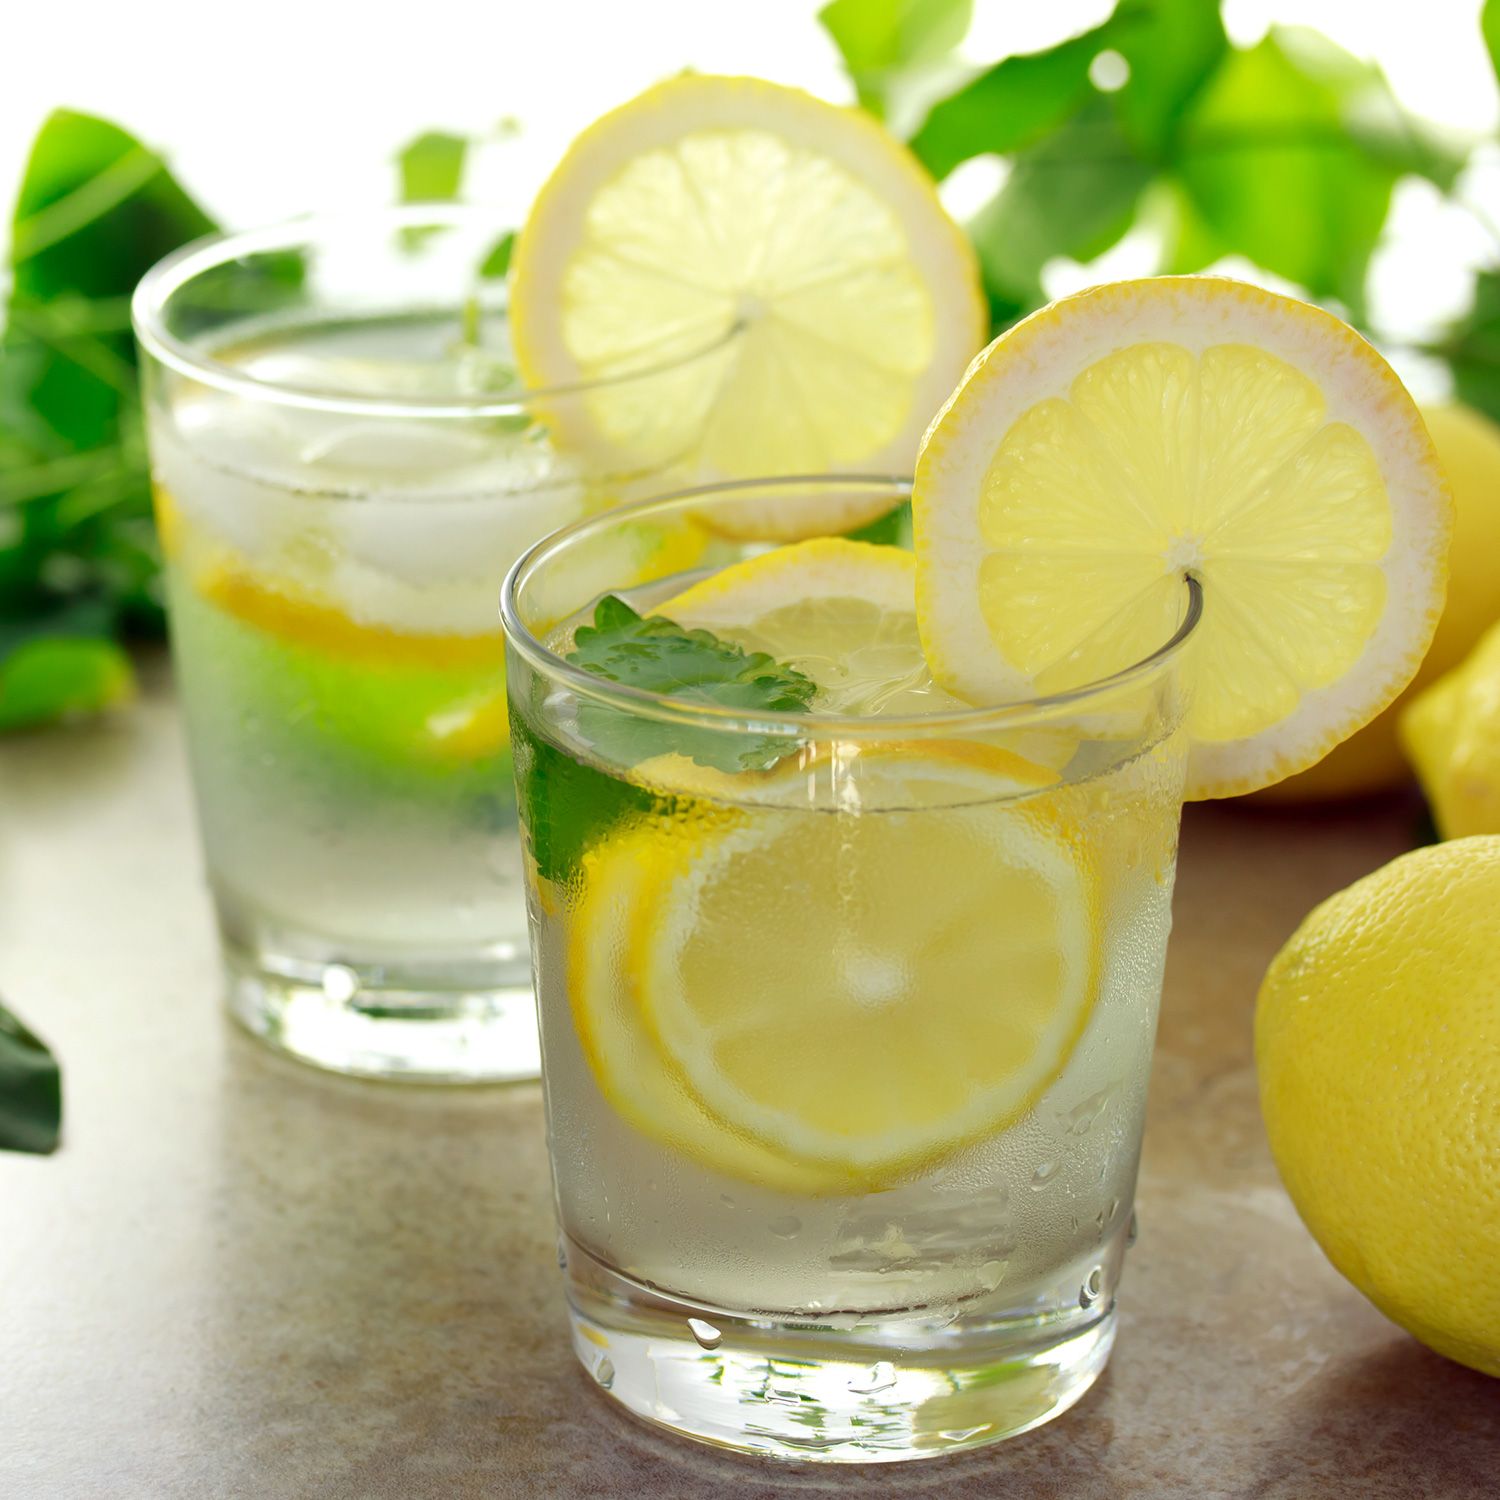 Acqua e limone